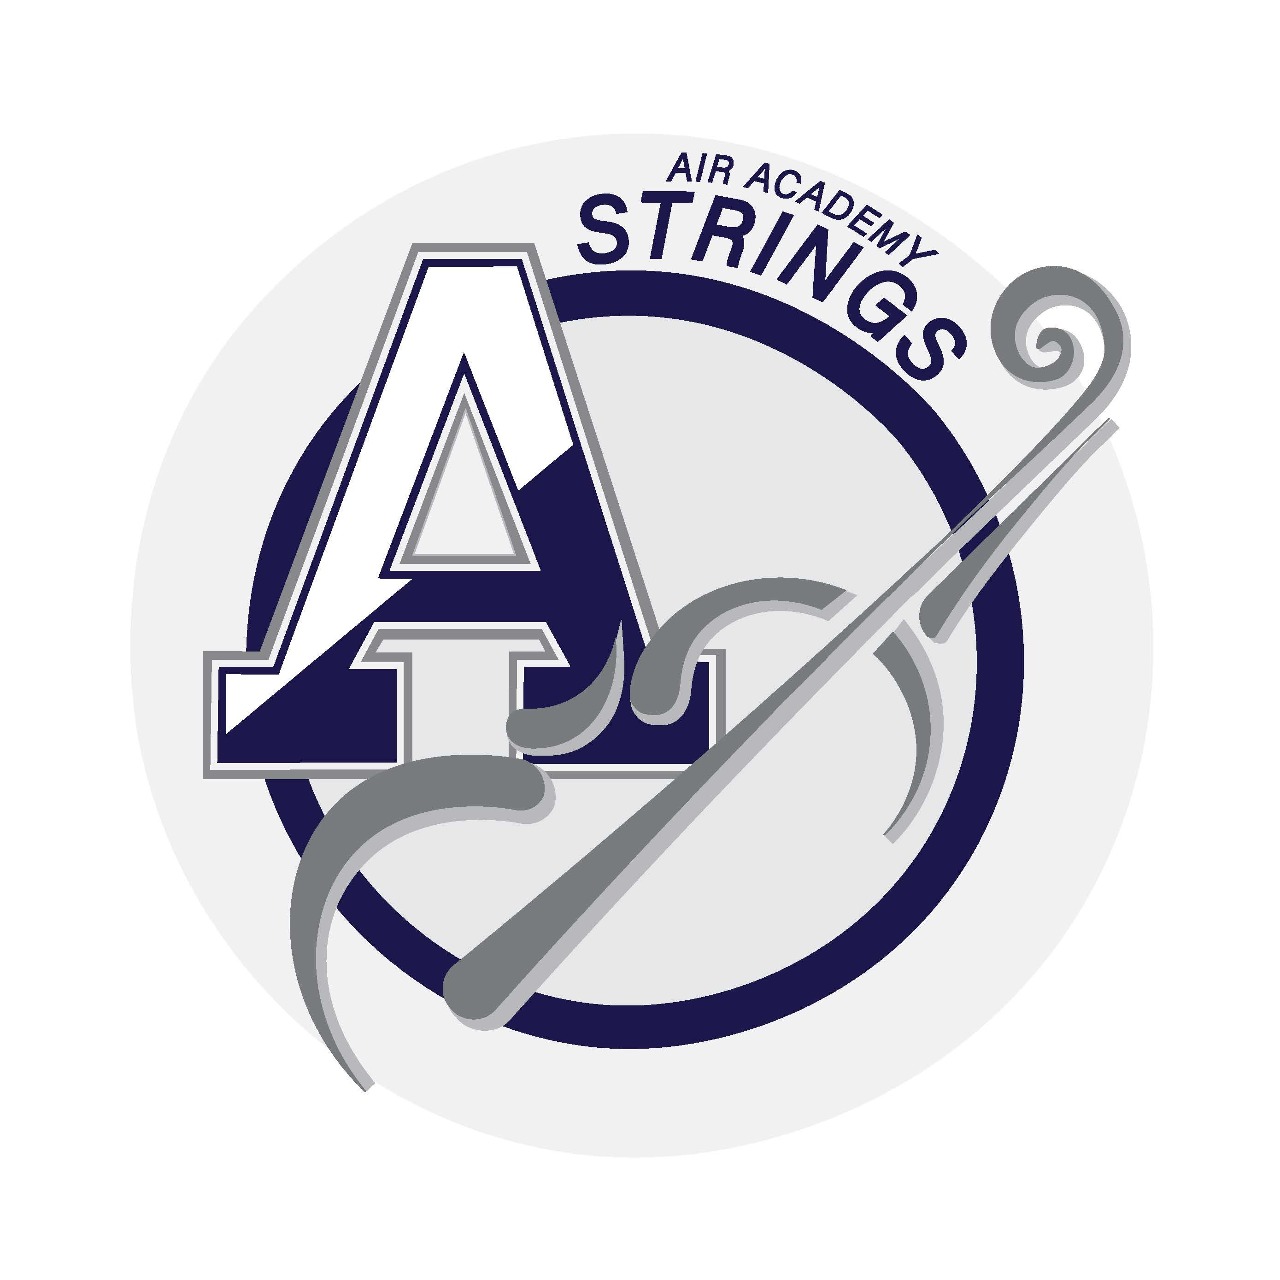 The AAHS Strings program logo.